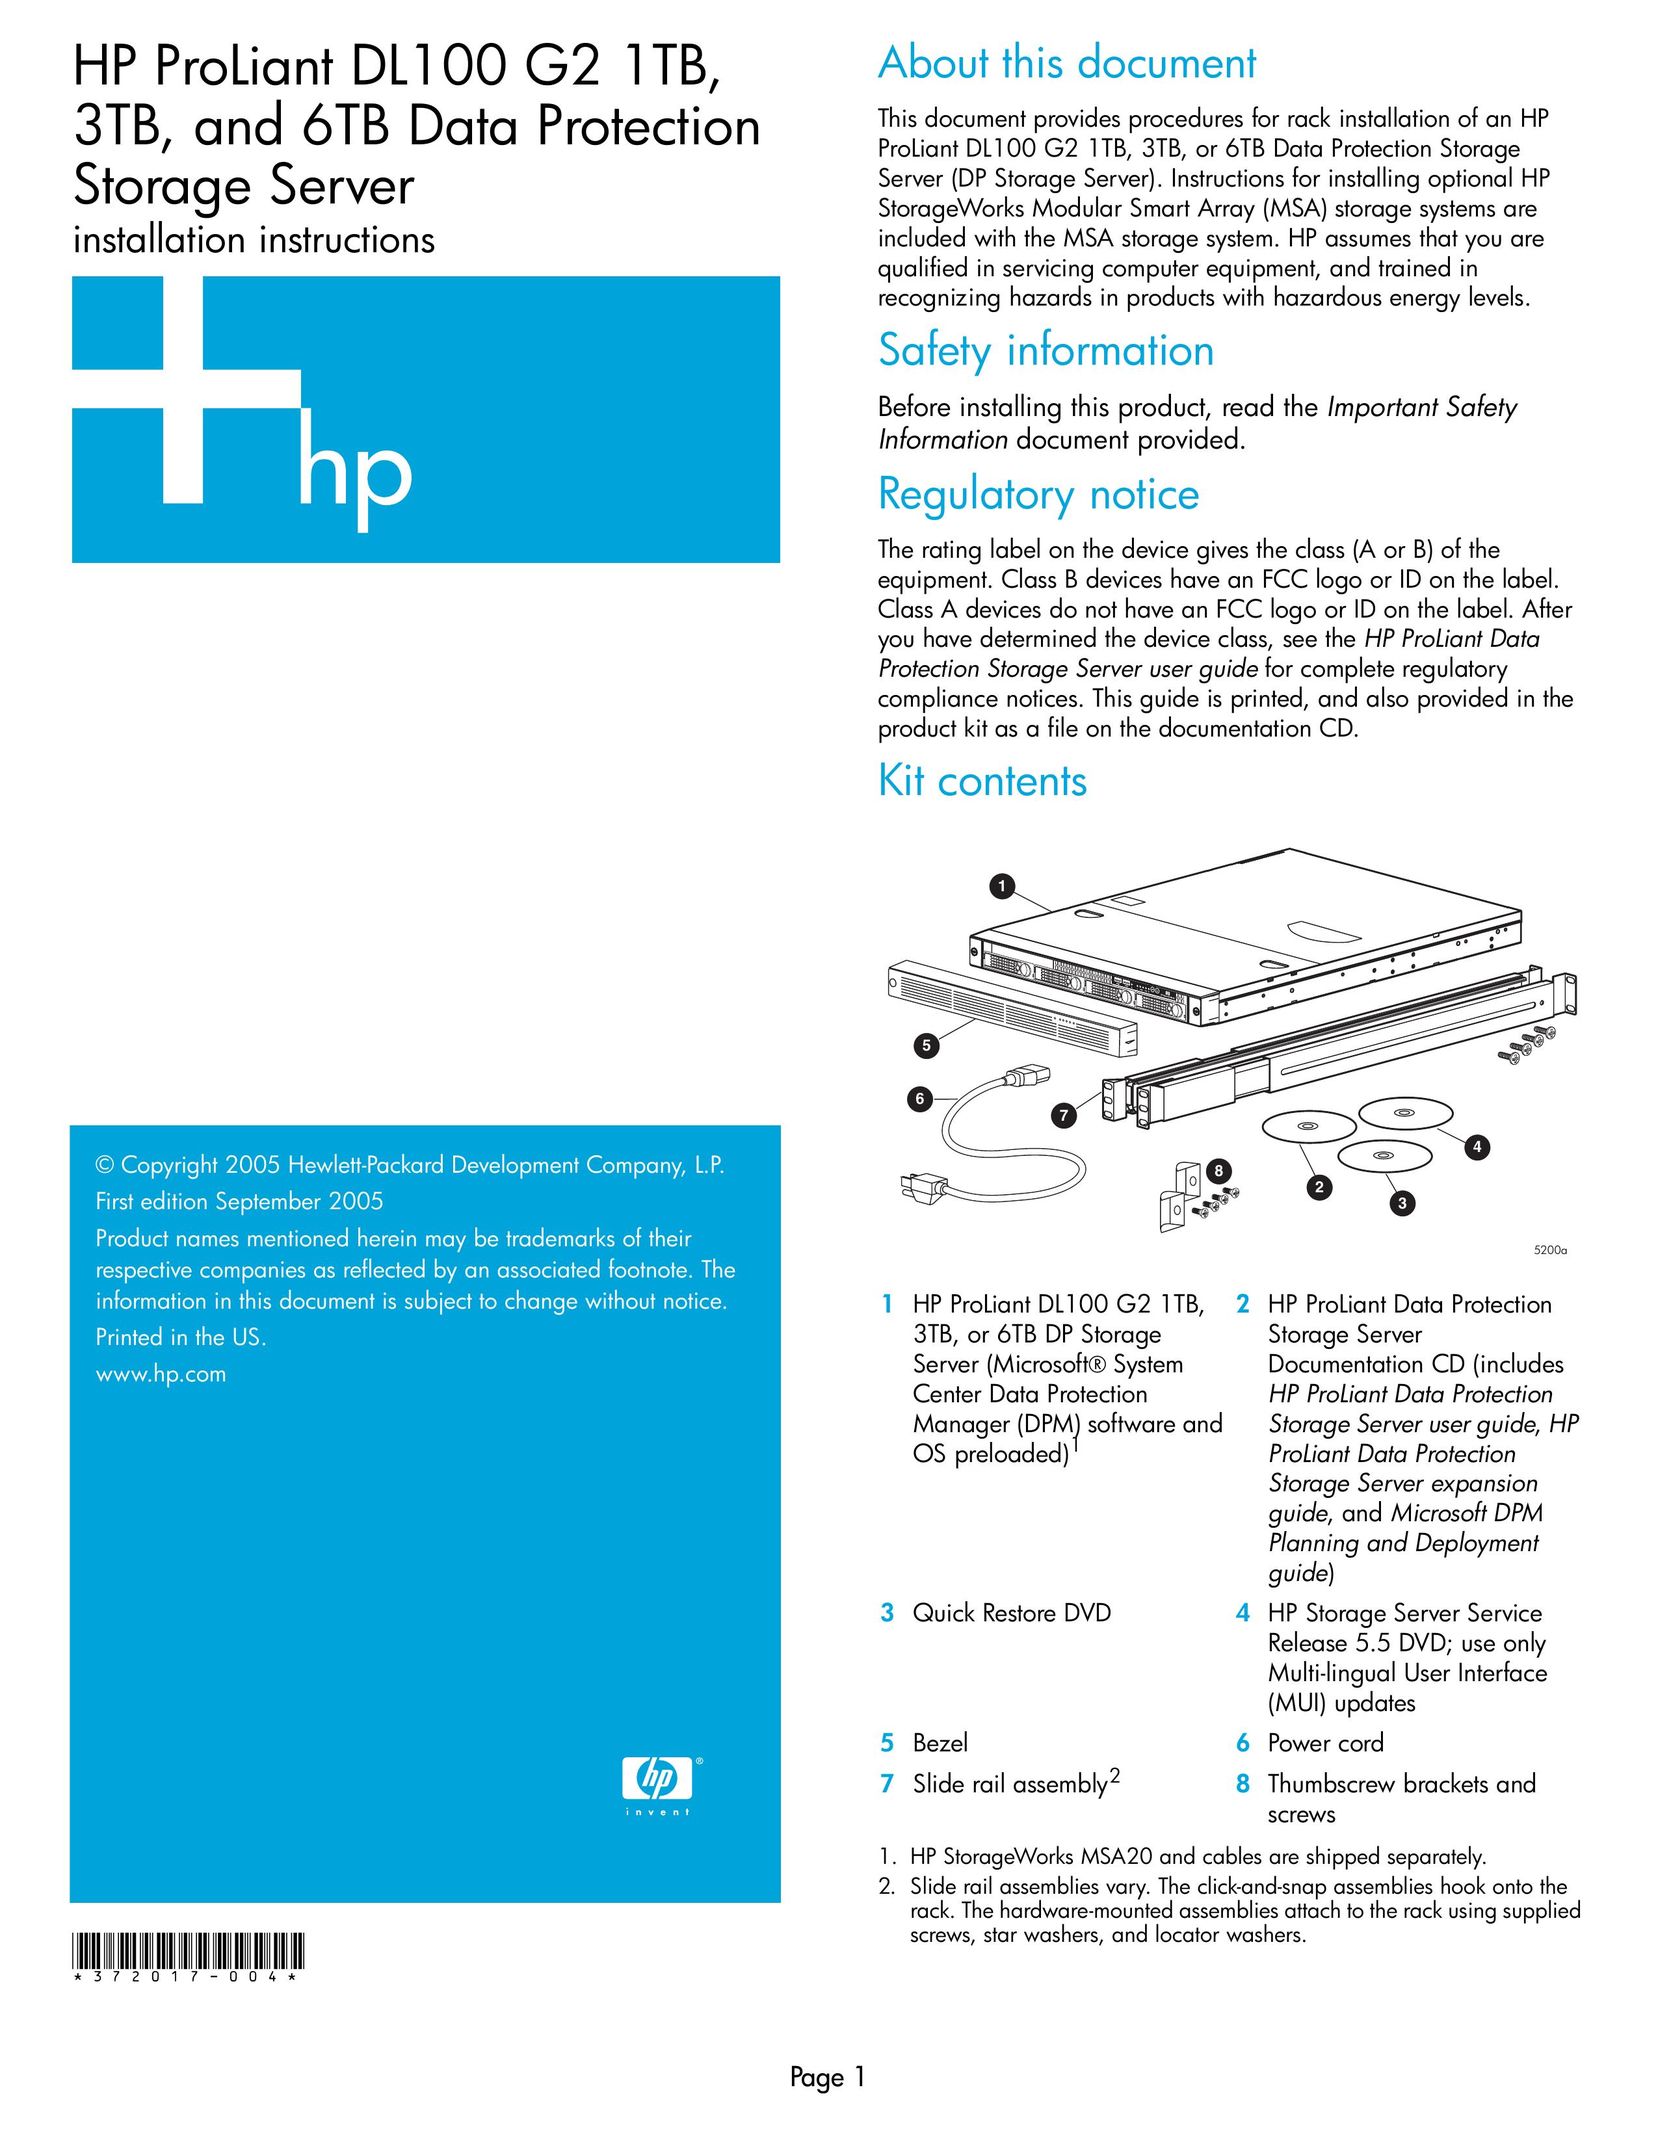 HP (Hewlett-Packard) DL100 G2 Barcode Reader User Manual